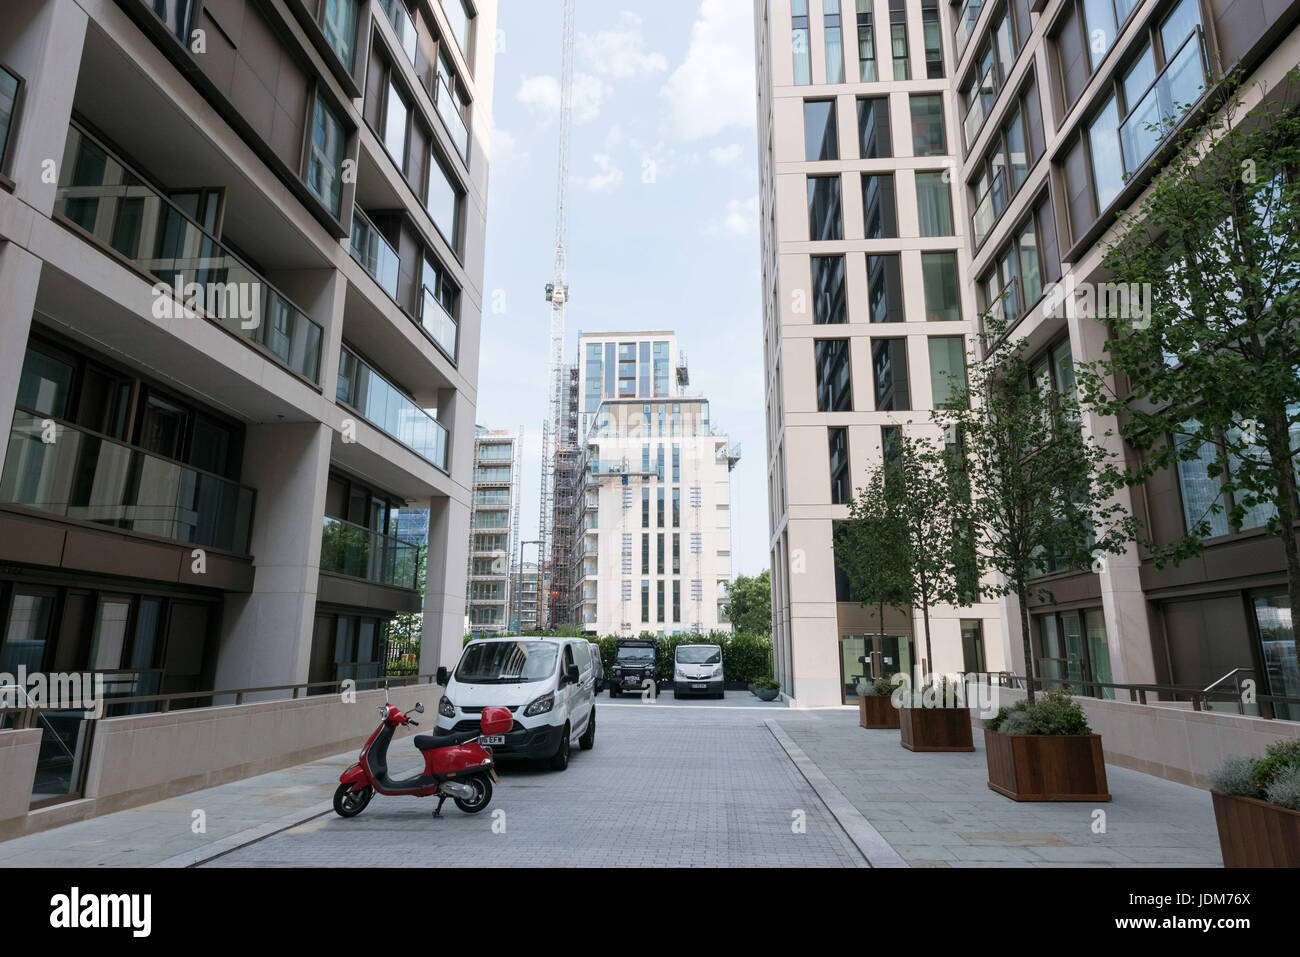 London, UK. 21. Juni 2017. Blick auf fast fertig Wohnblocks und Wohnblocks in Kensington Zeile komplexe besetzt. Es wurde angekündigt, dass achtundsechzig Wohnungen Familien, die in die Luxus-Hochhäusern umgesiedelt werden für die permanente Besetzung im Juli und August verfügbar sein wird. Die ein bis vier Schlafzimmer-Schlafzimmer-Apartments für bis zu £ 8,5 Millionen zu verkaufen, werden Teil der erschwinglichen Quote gebaut und verfügen über eine mehr "einfach '' interne Spezifikation, aber haben die gleiche Qualität bauen. Bildnachweis: ZUMA Press, Inc./Alamy Live-Nachrichten Stockfoto